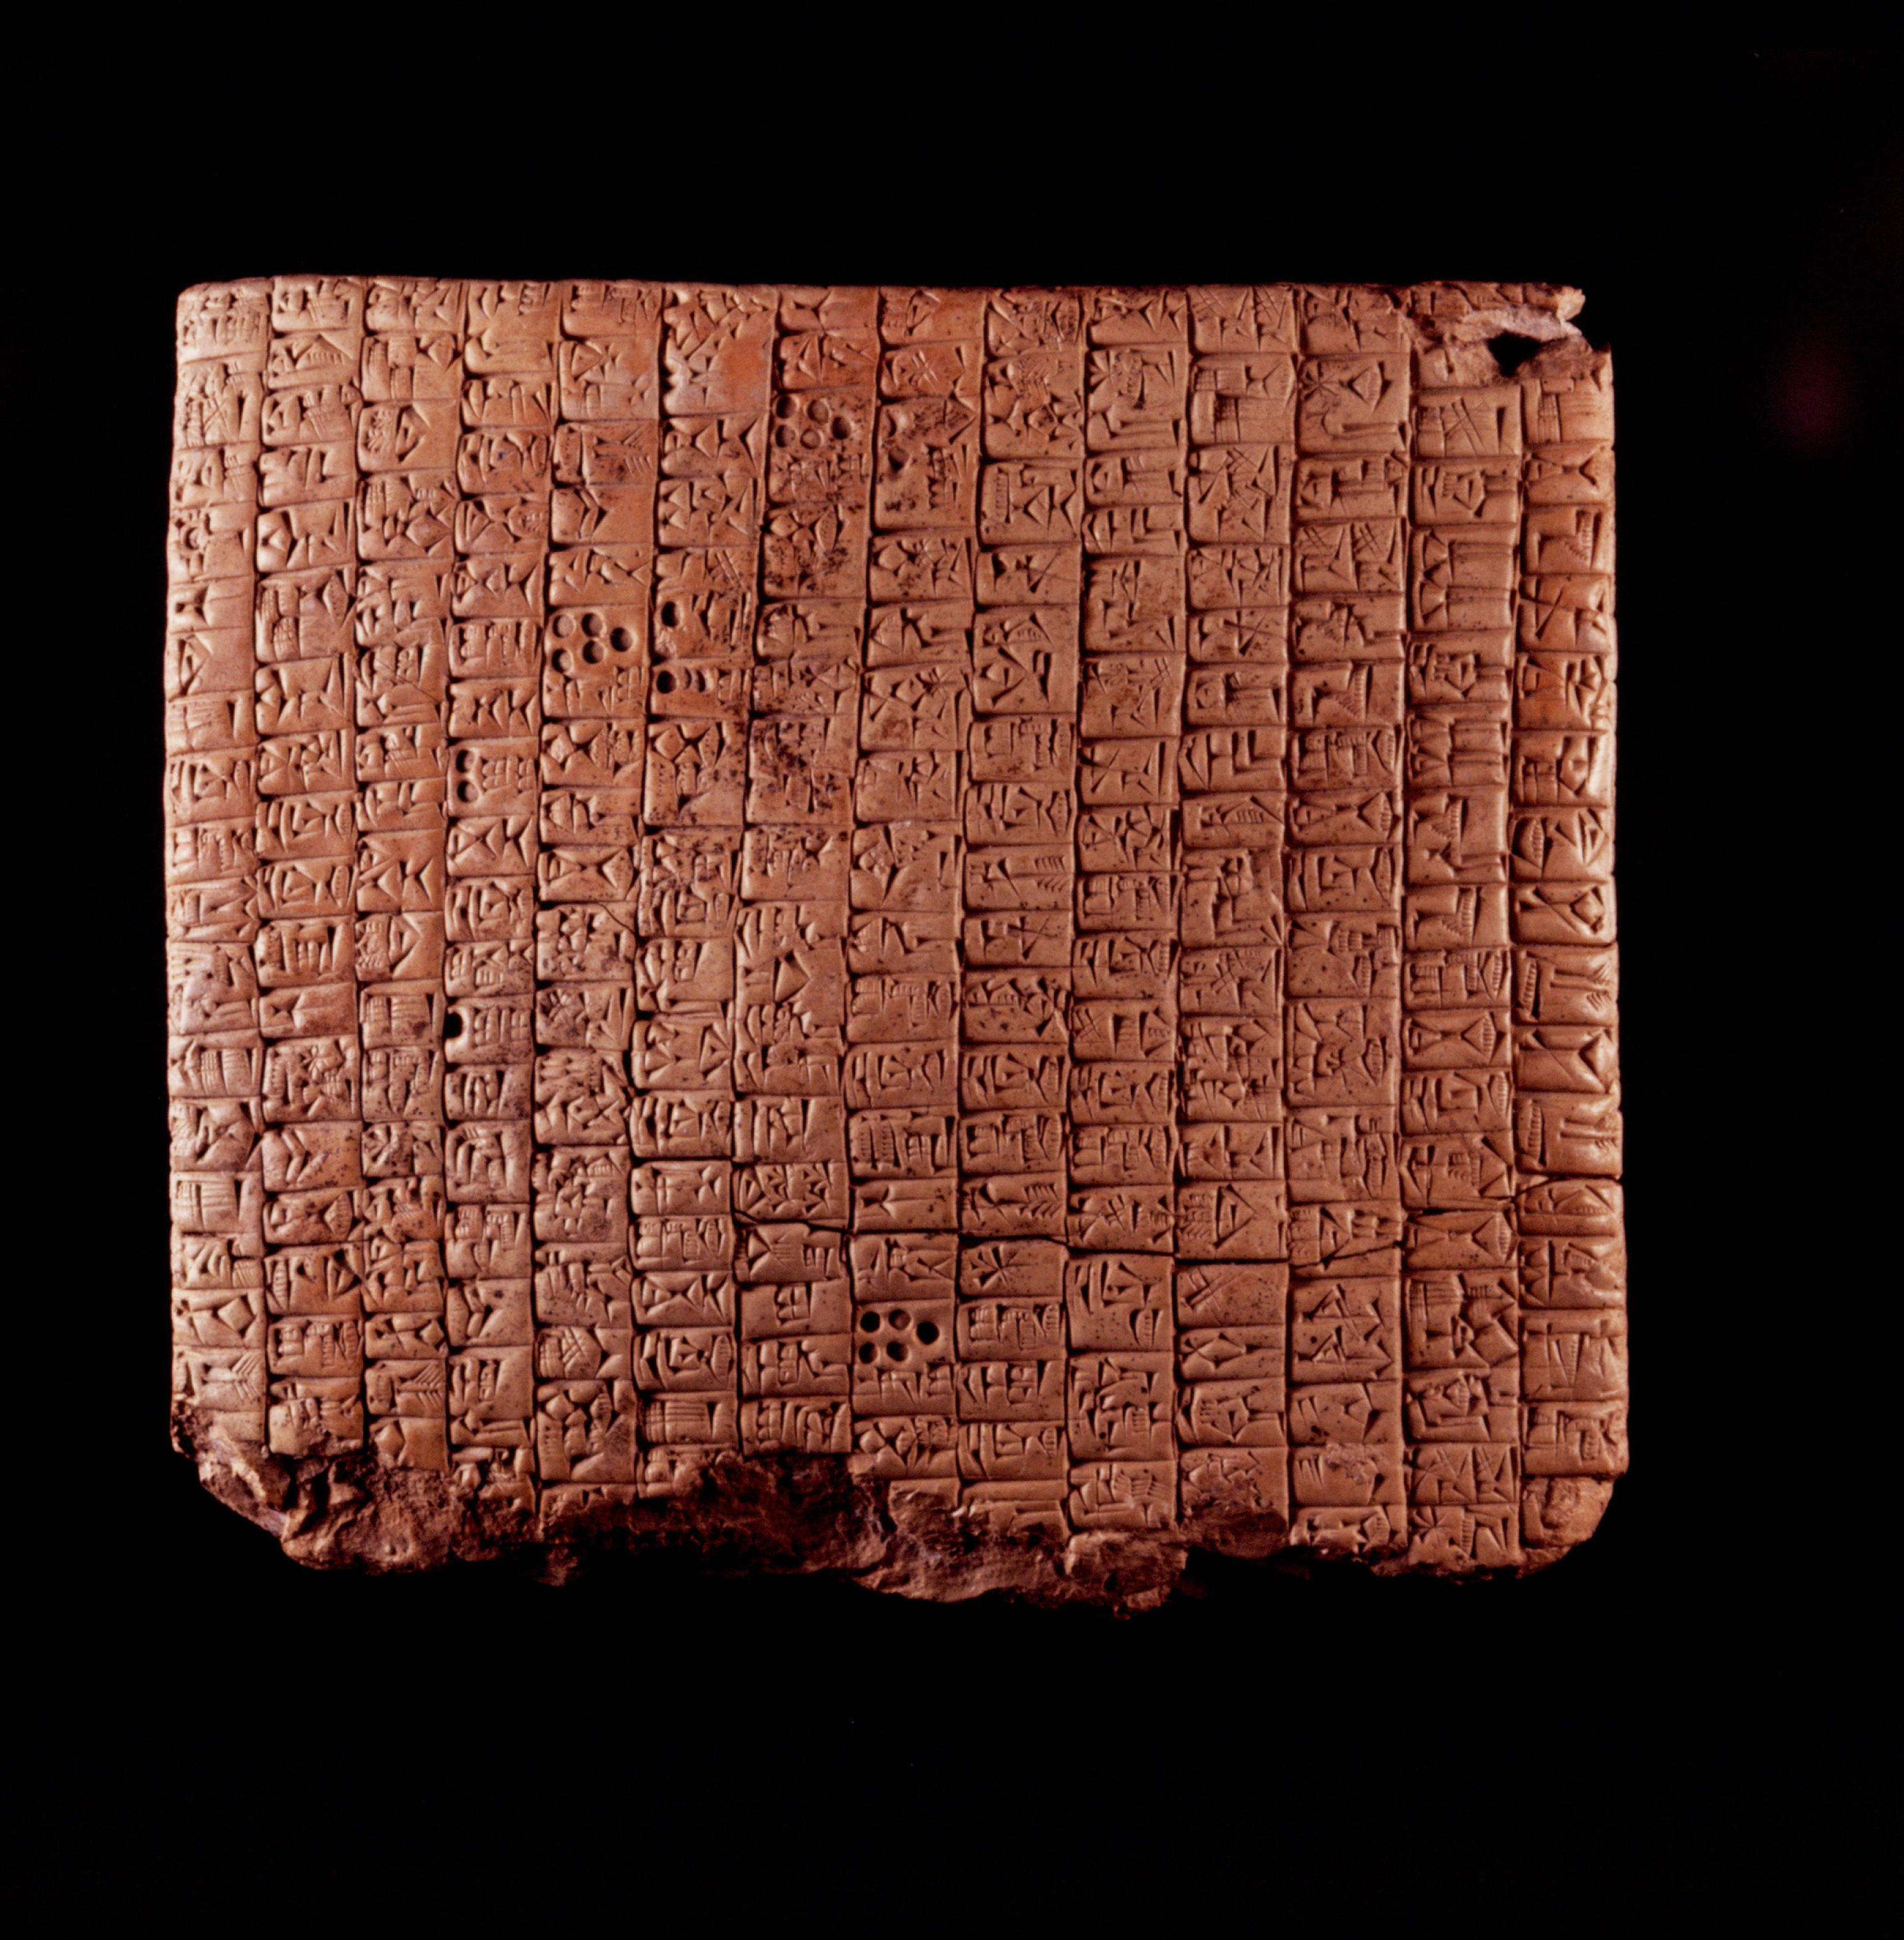 scrittura cuneiforme